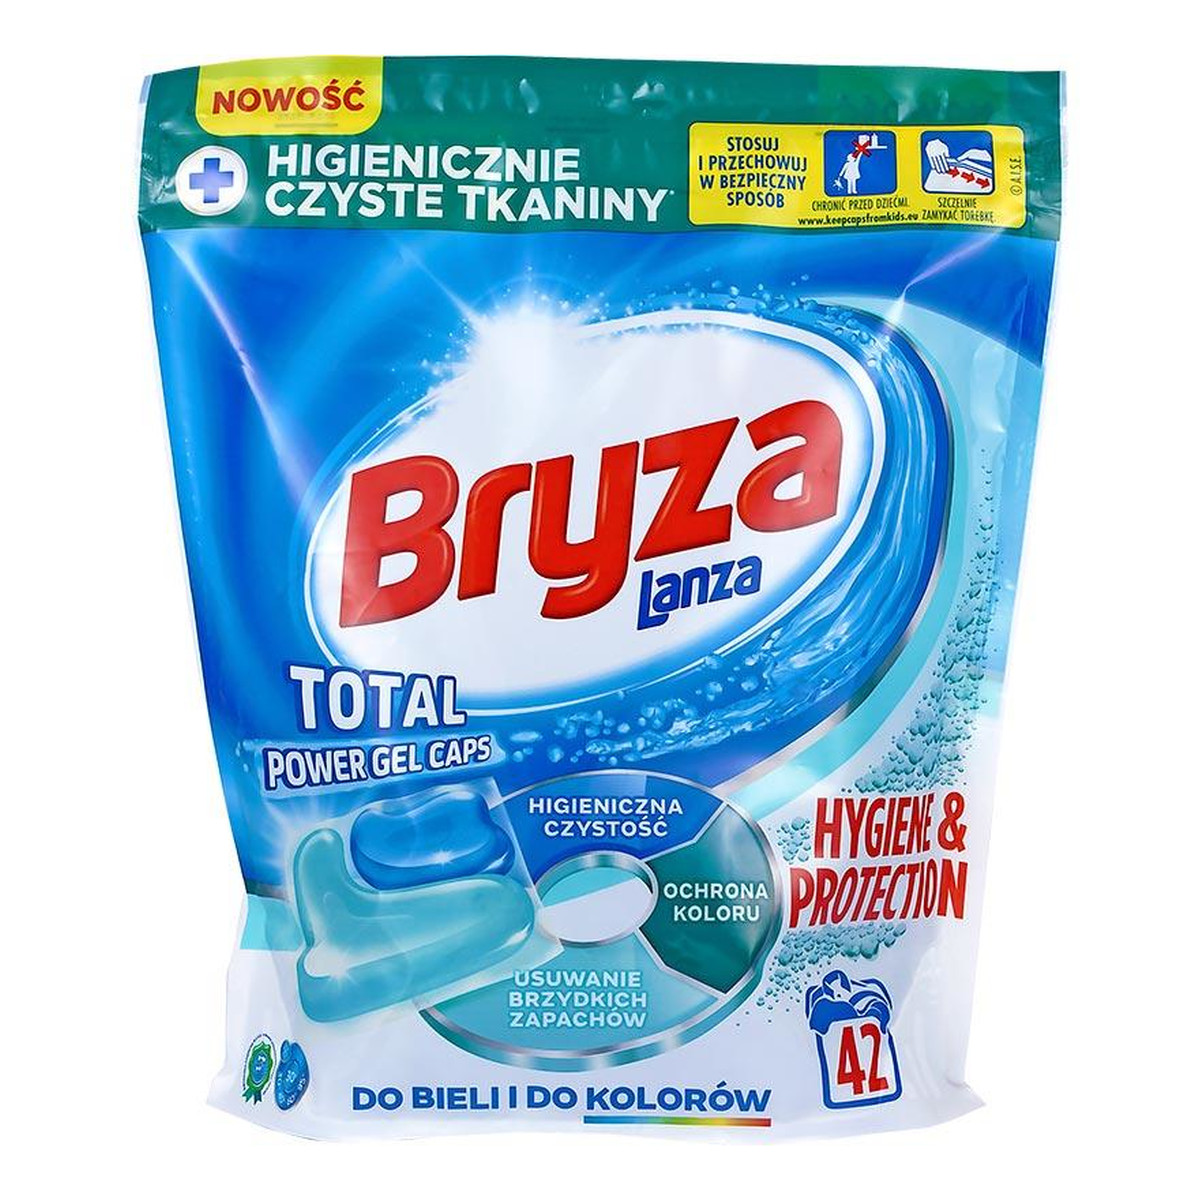 Bryza Lanza Hygiene&Protection kapsułki do prania do bieli i kolorów 28szt